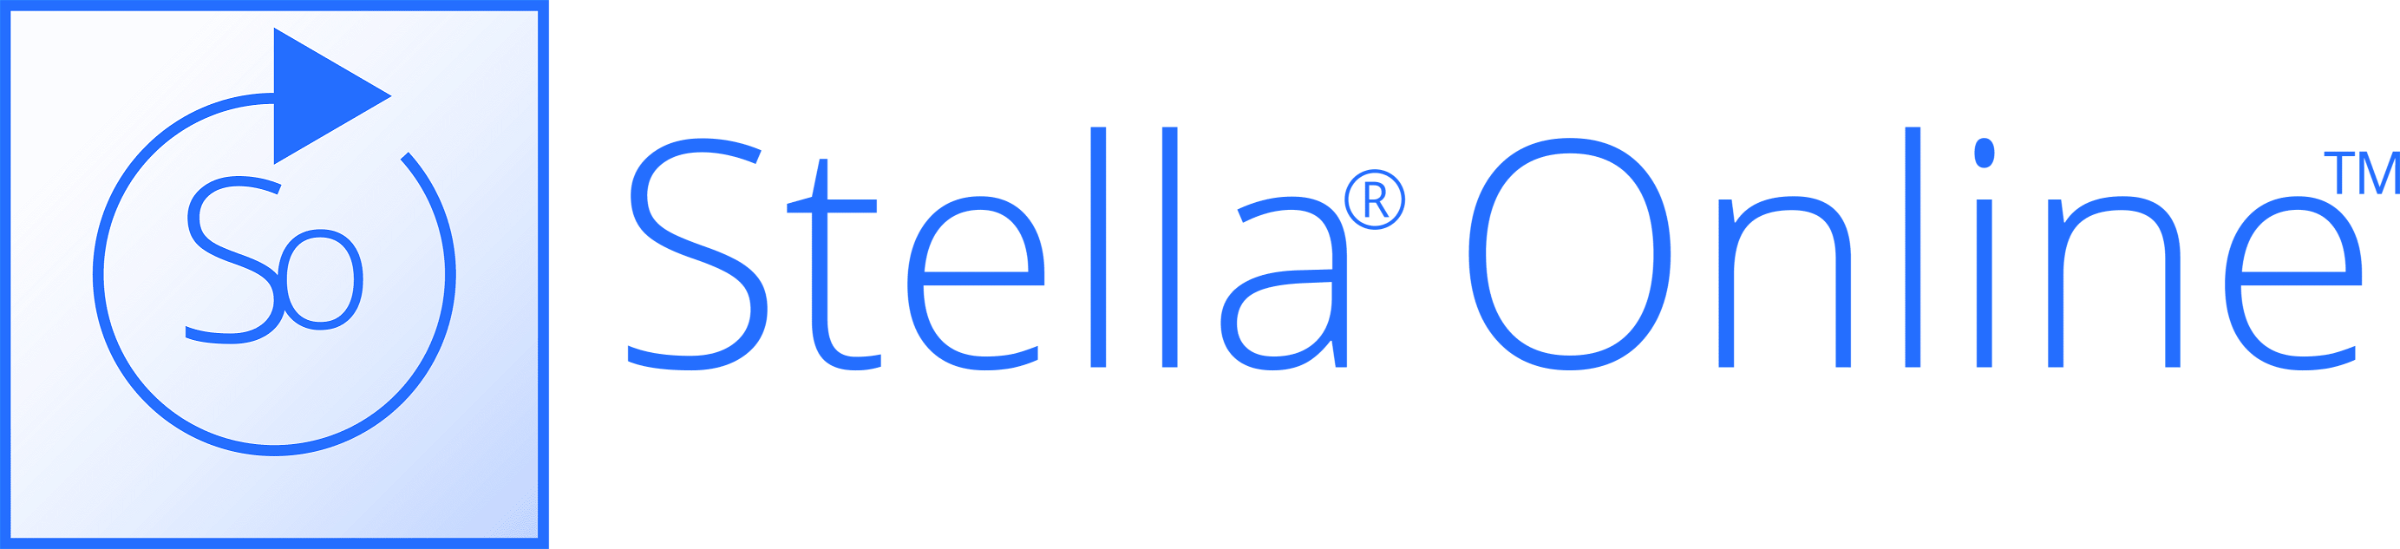 Stella online computer simulation